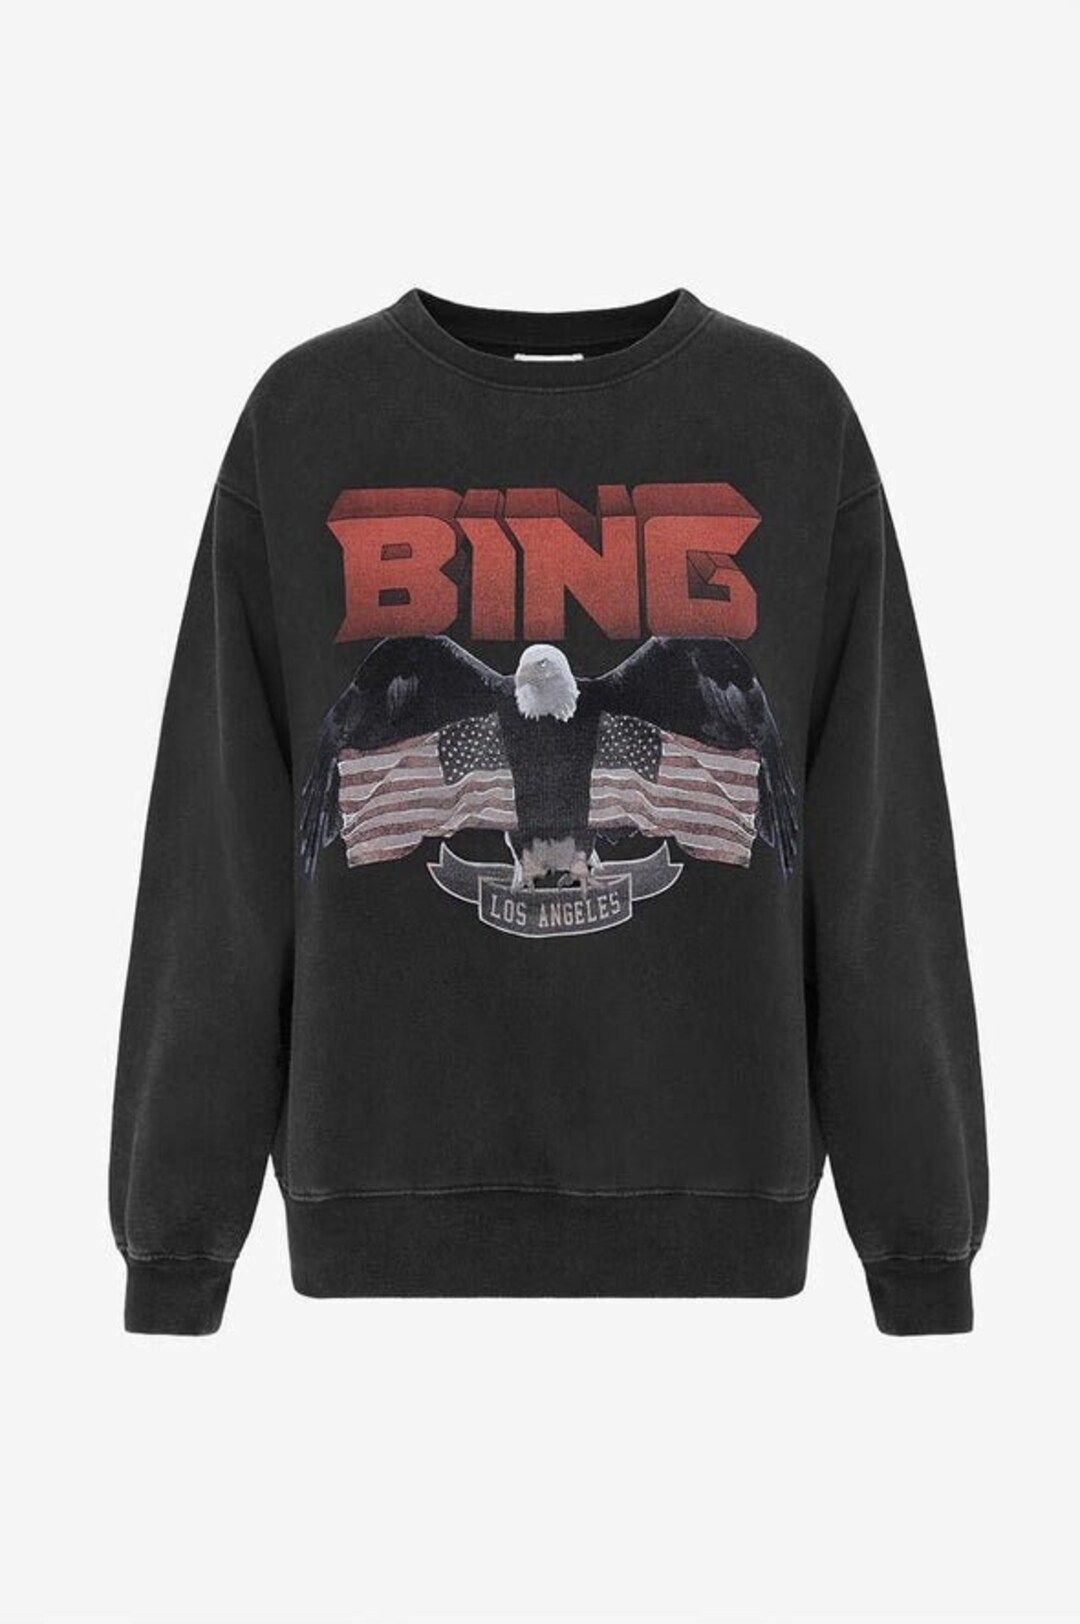 Vintage Bing Crewneck Sweatshirt Hoodie, Anine Bing US Eagle, Harley University Sweater, female A... | Etsy (US)